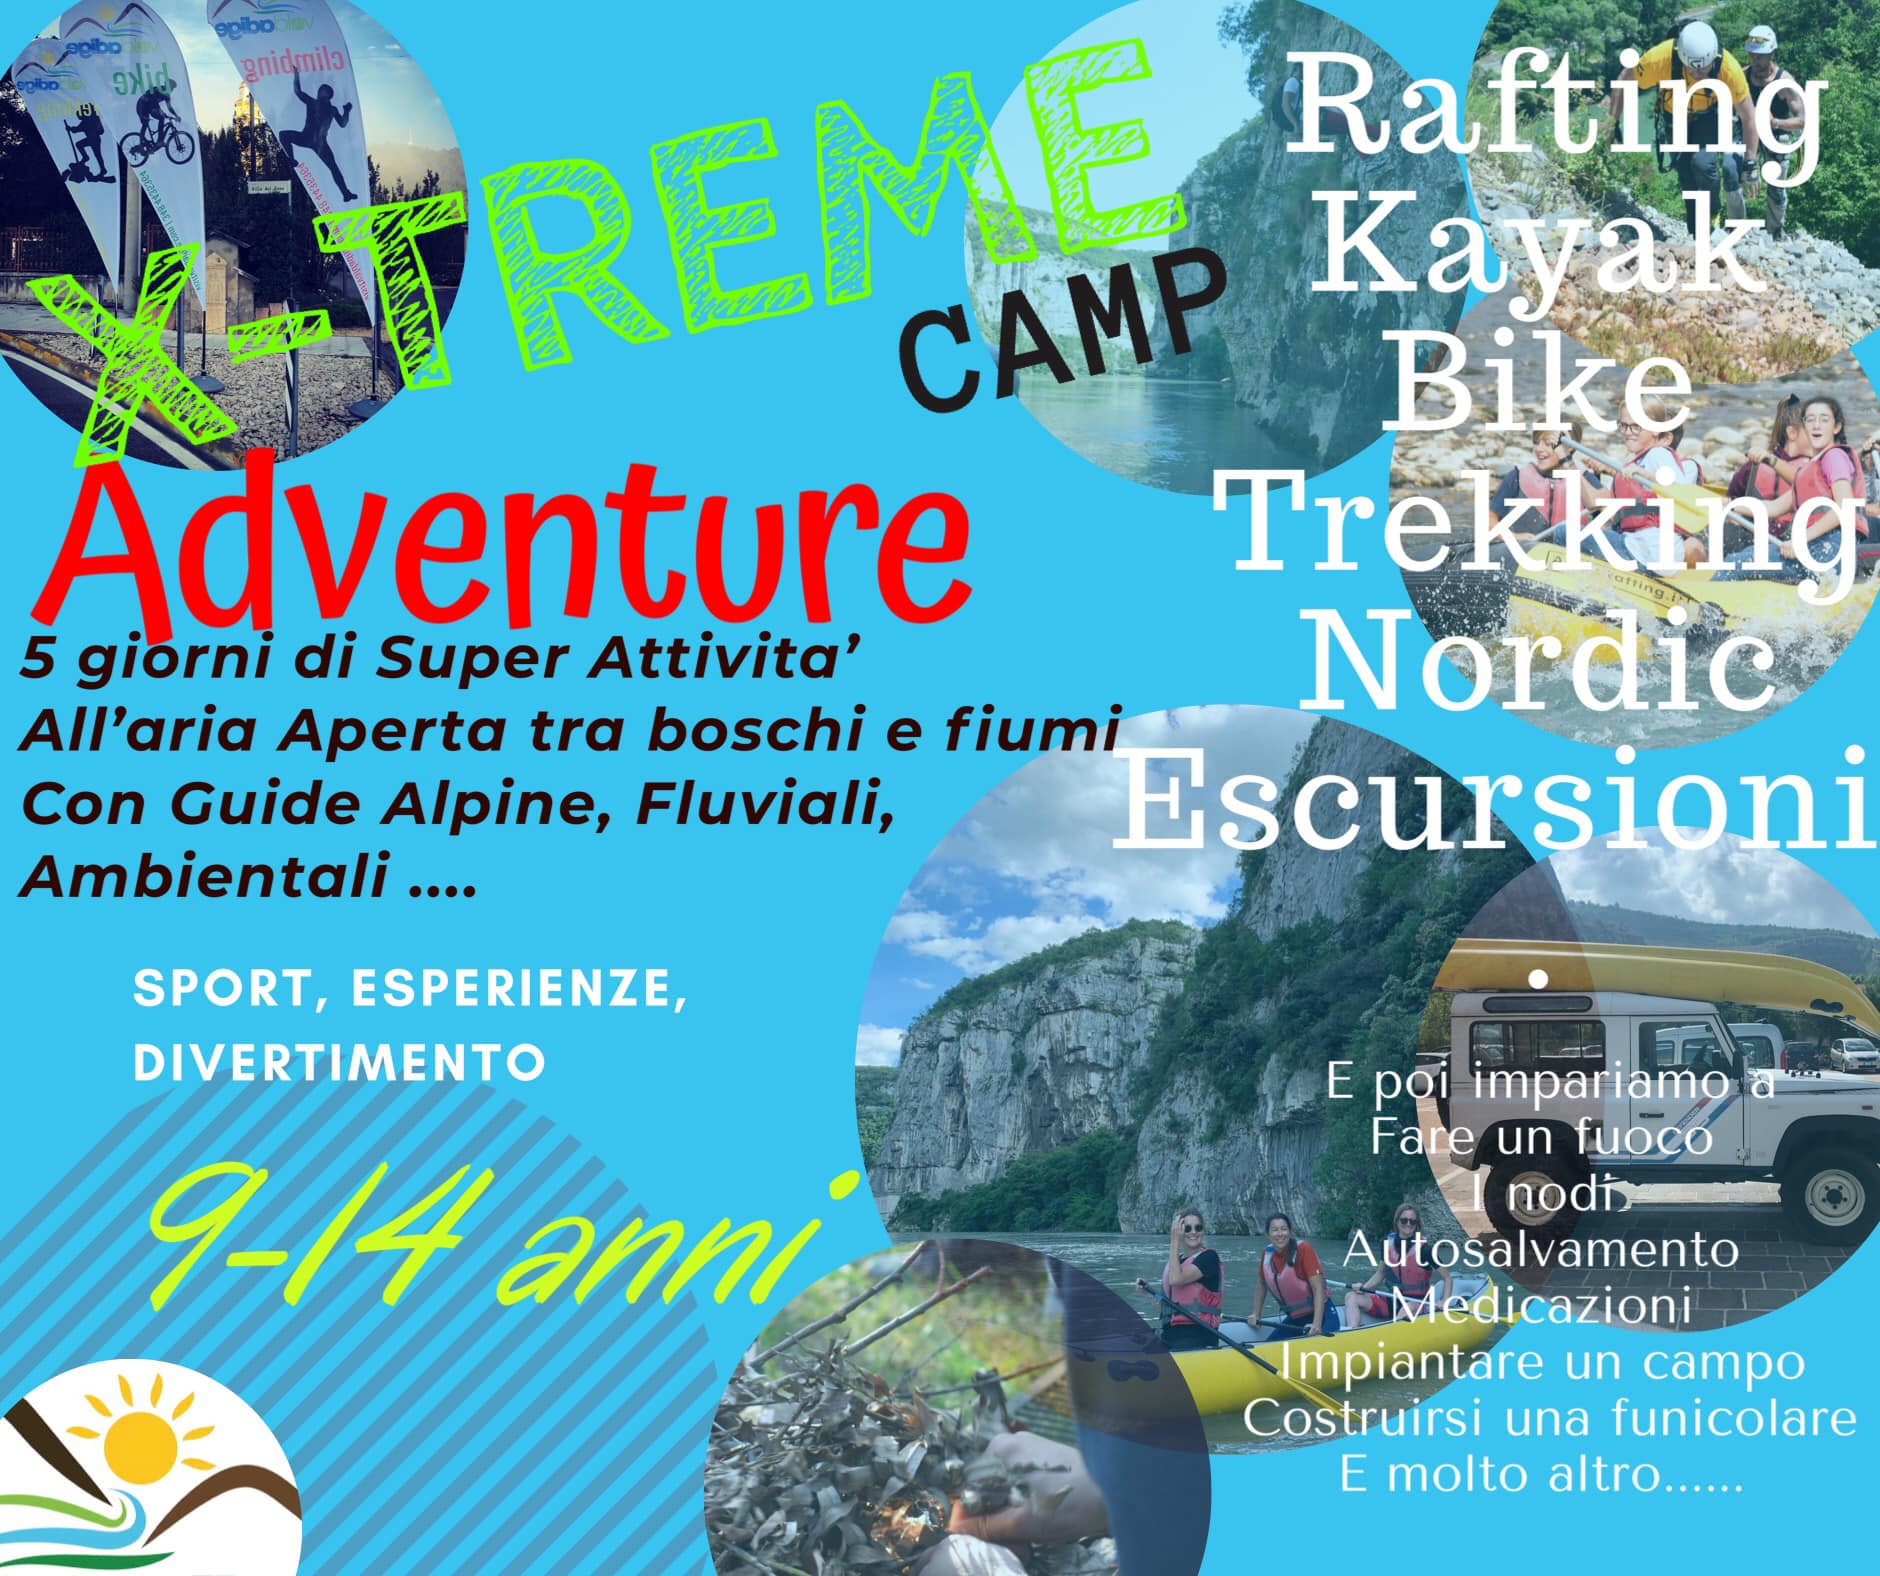 X-treme Adventure CAMP
 Da 8 a 15 anni
 DAL 20 AL 31 LUGLIO
 Super Attività all’...